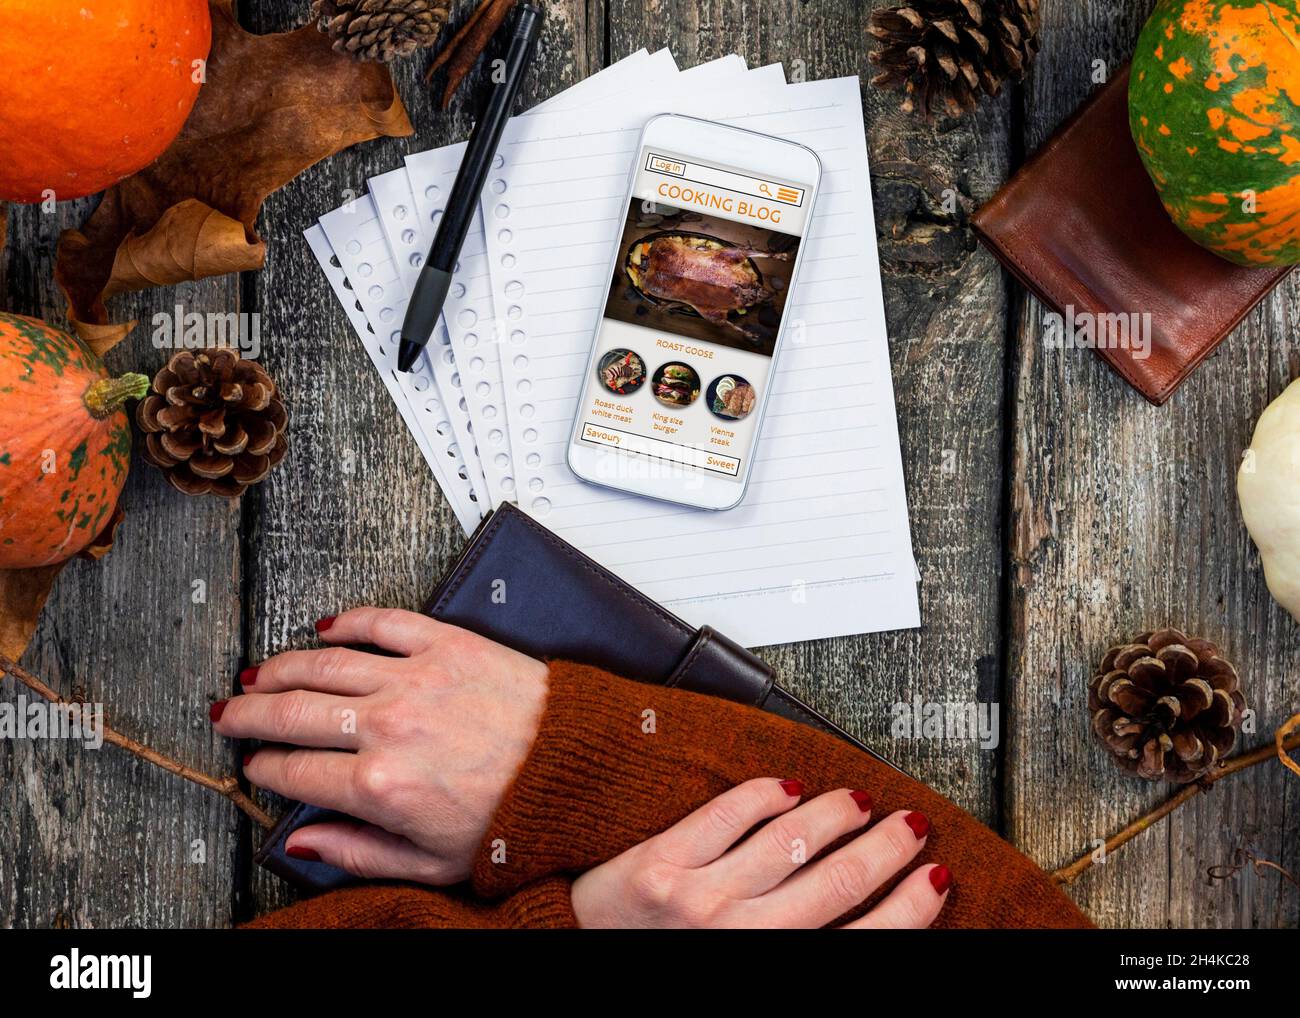 Smartphone avec écran tactile avec blog de cuisine en ligne sur l'écran à table rustique dans la cuisine.Recette de Thanksgiving.Concept de cuisine d'automne. Banque D'Images